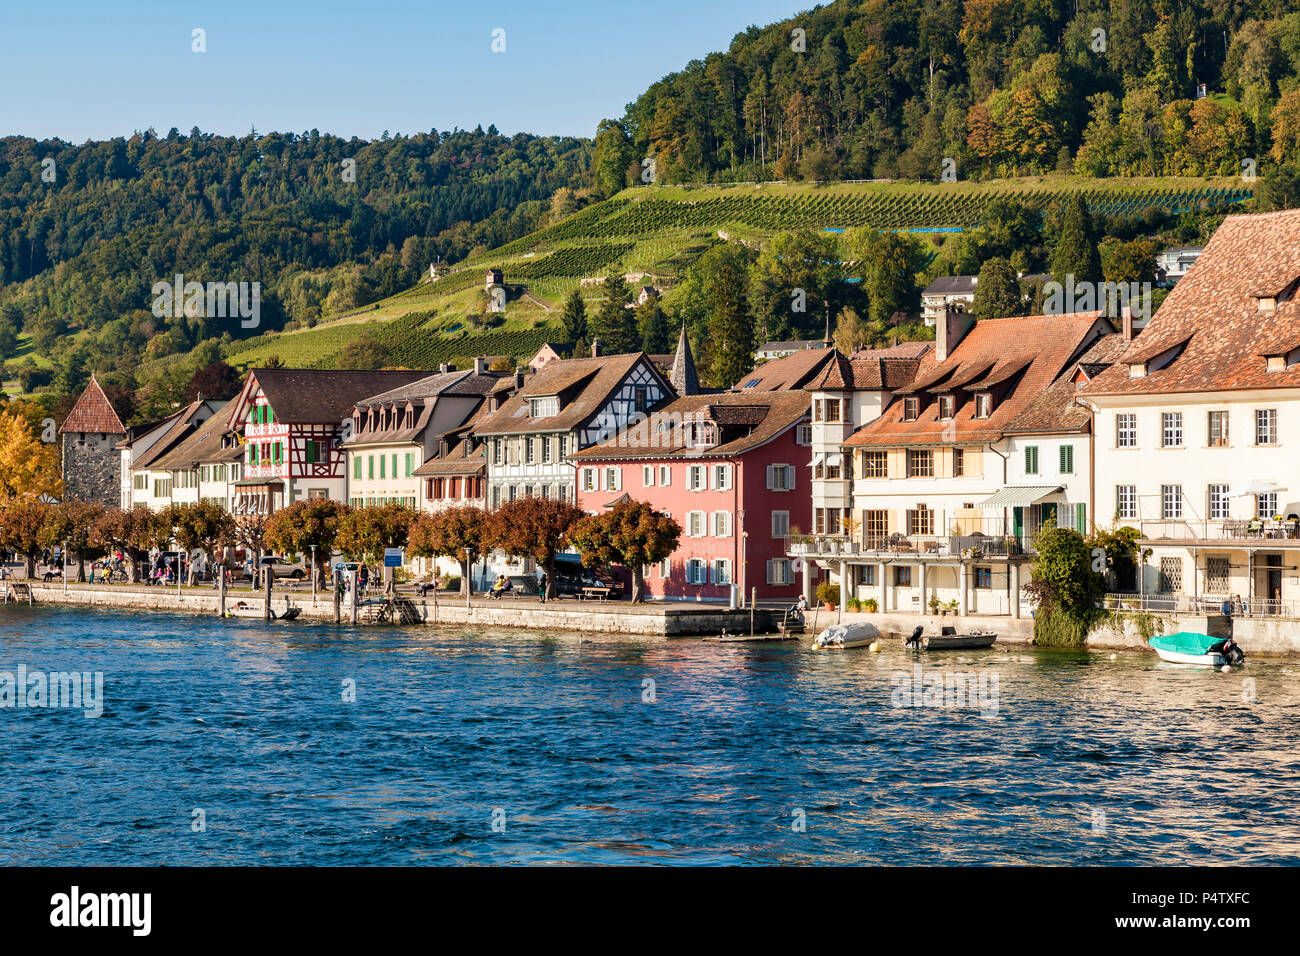 Switzerland, Canton of Schaffhausen, Stein am Rhein, Lake Constance, Rhine river, Old town, waterfront promenade Stock Photo